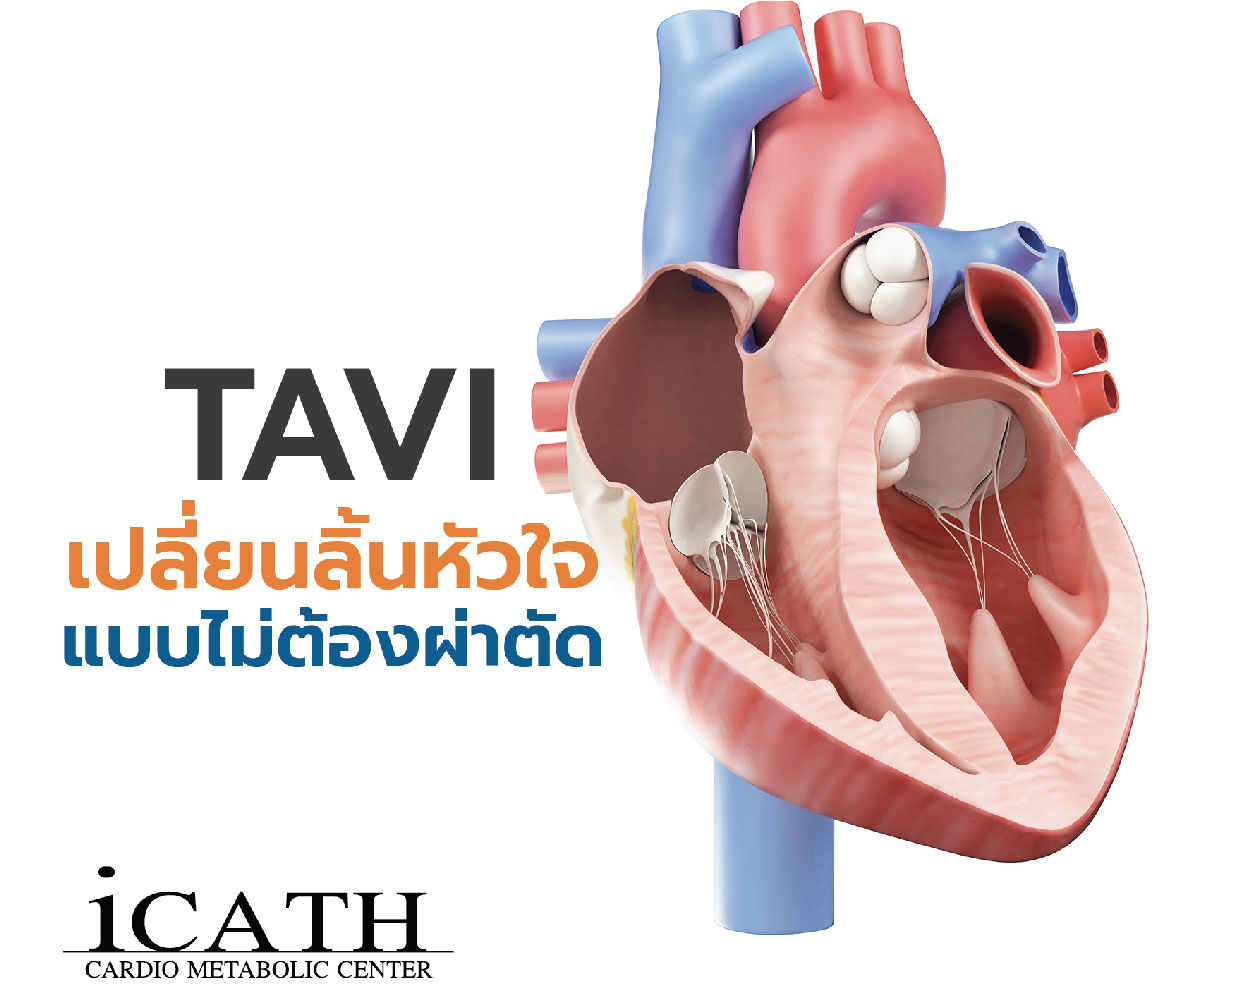 TAVI เปลี่ยนลิ้นหัวใจแบบไม่ต้องผ่าตัด